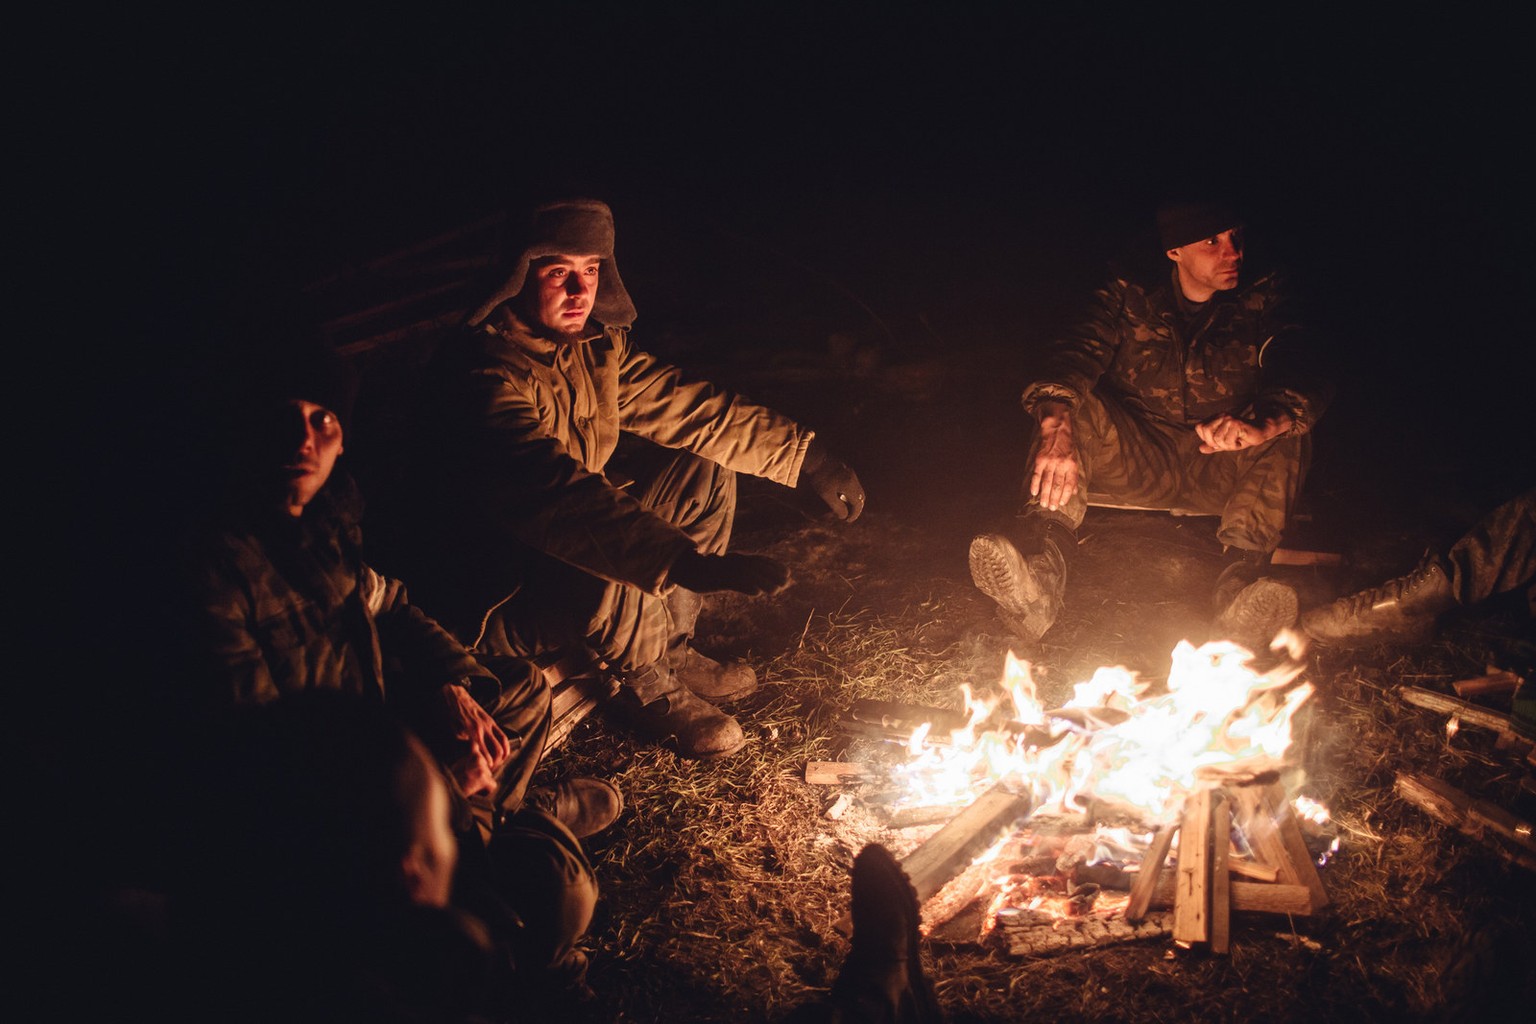 Am Feuer wärmen sich die Kämpfer. Viele von ihnen sind Freiwillige aus der Gegend, die unter russischem Kommando stehen.&nbsp;